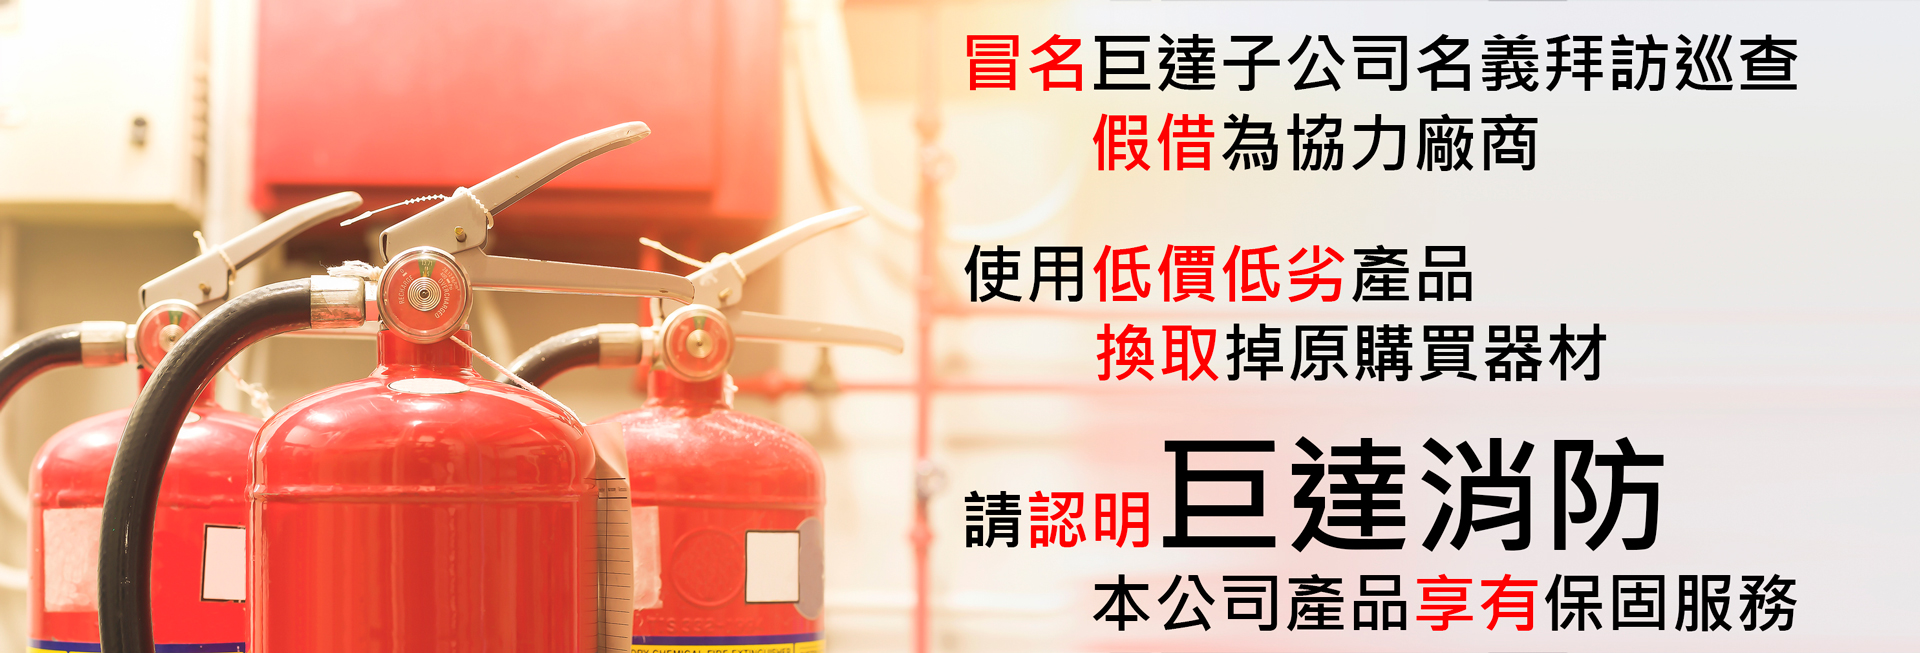 【防範詐騙】假借巨達消防更換販售消防器材商品 請勿上當受騙！！！